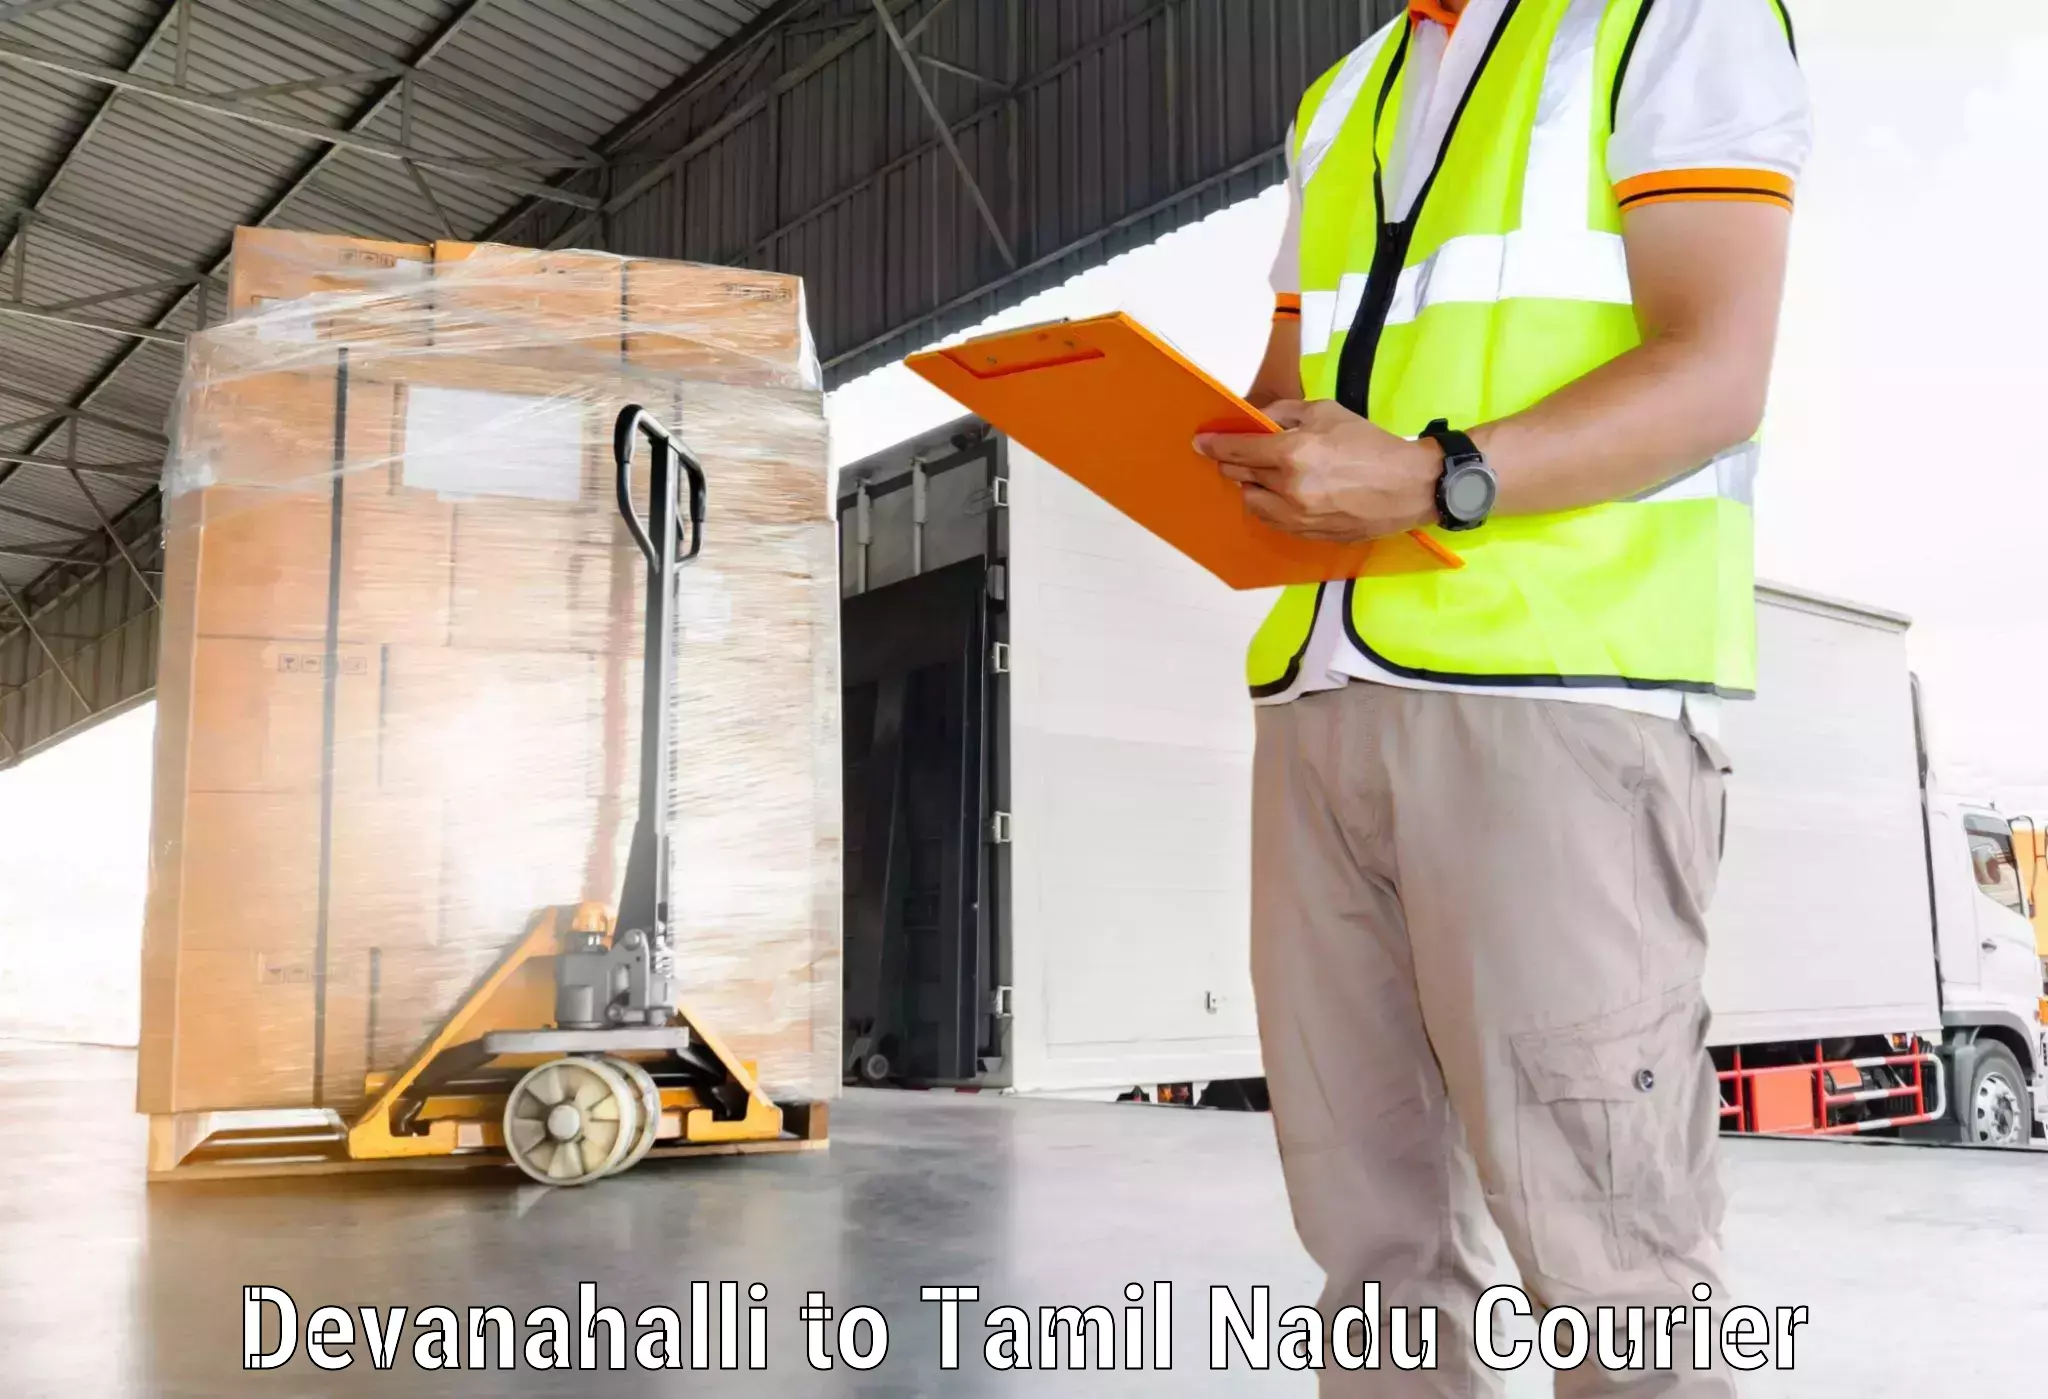 Modern delivery technologies Devanahalli to Mannargudi